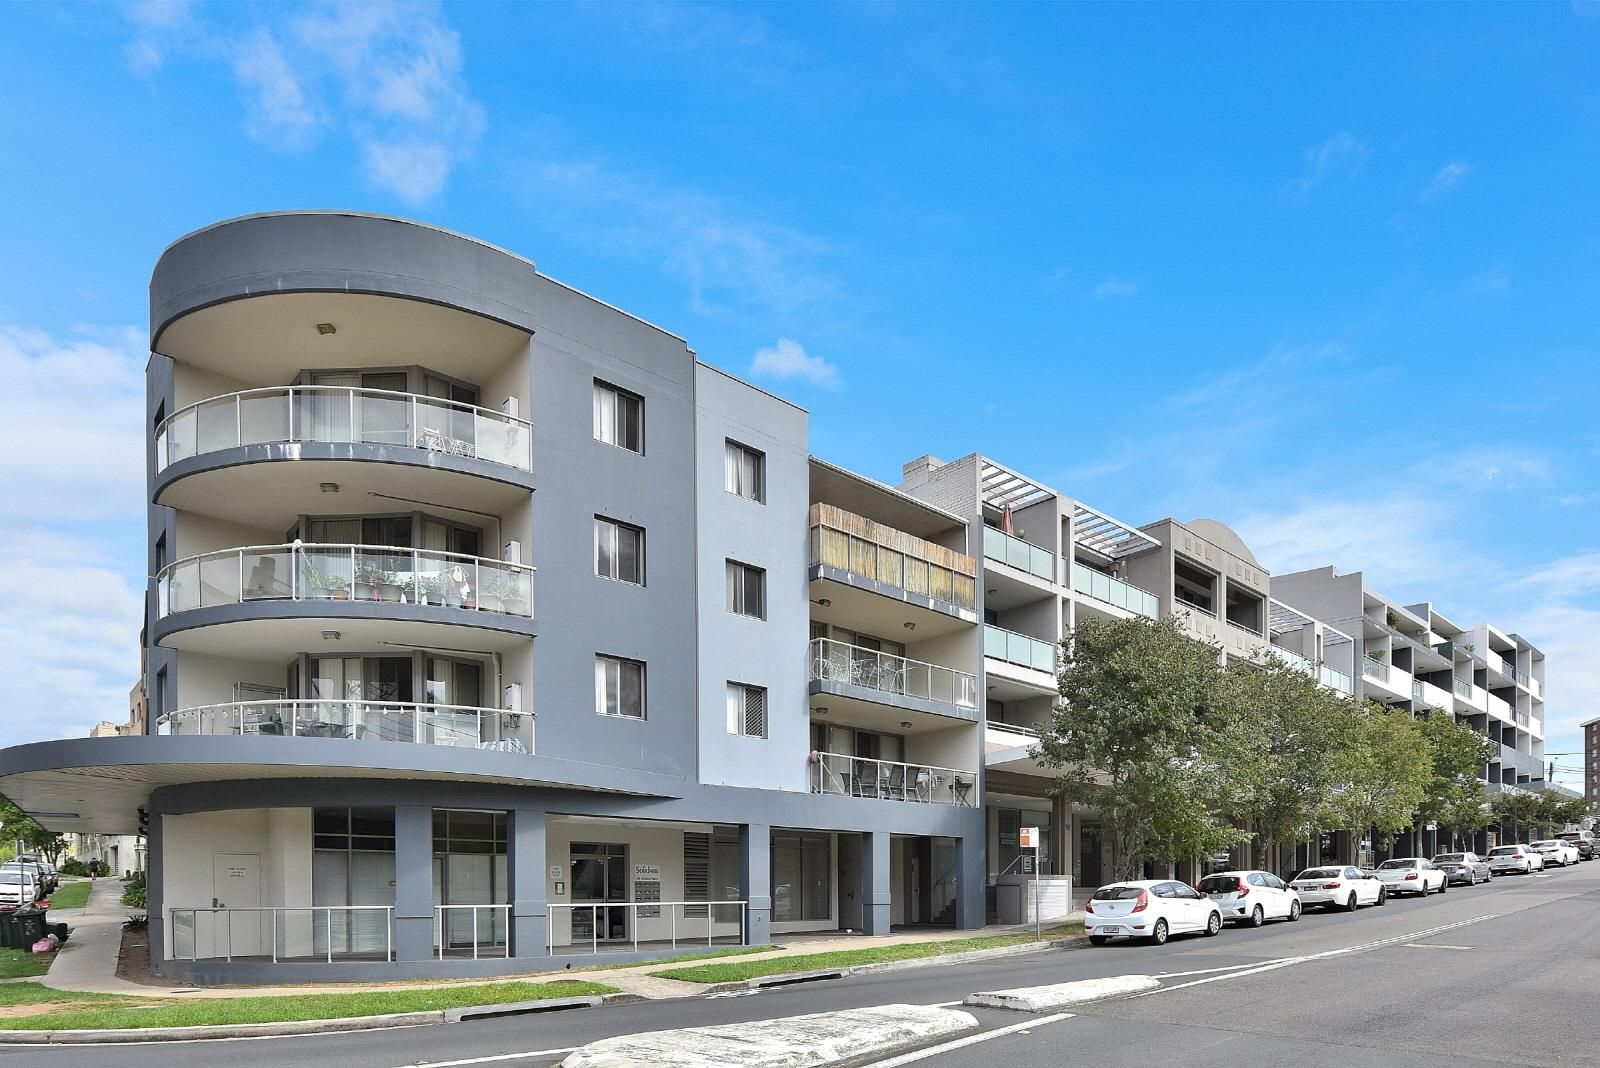 2 bedrooms Apartment / Unit / Flat in 1/28 Herbert Street WEST RYDE NSW, 2114